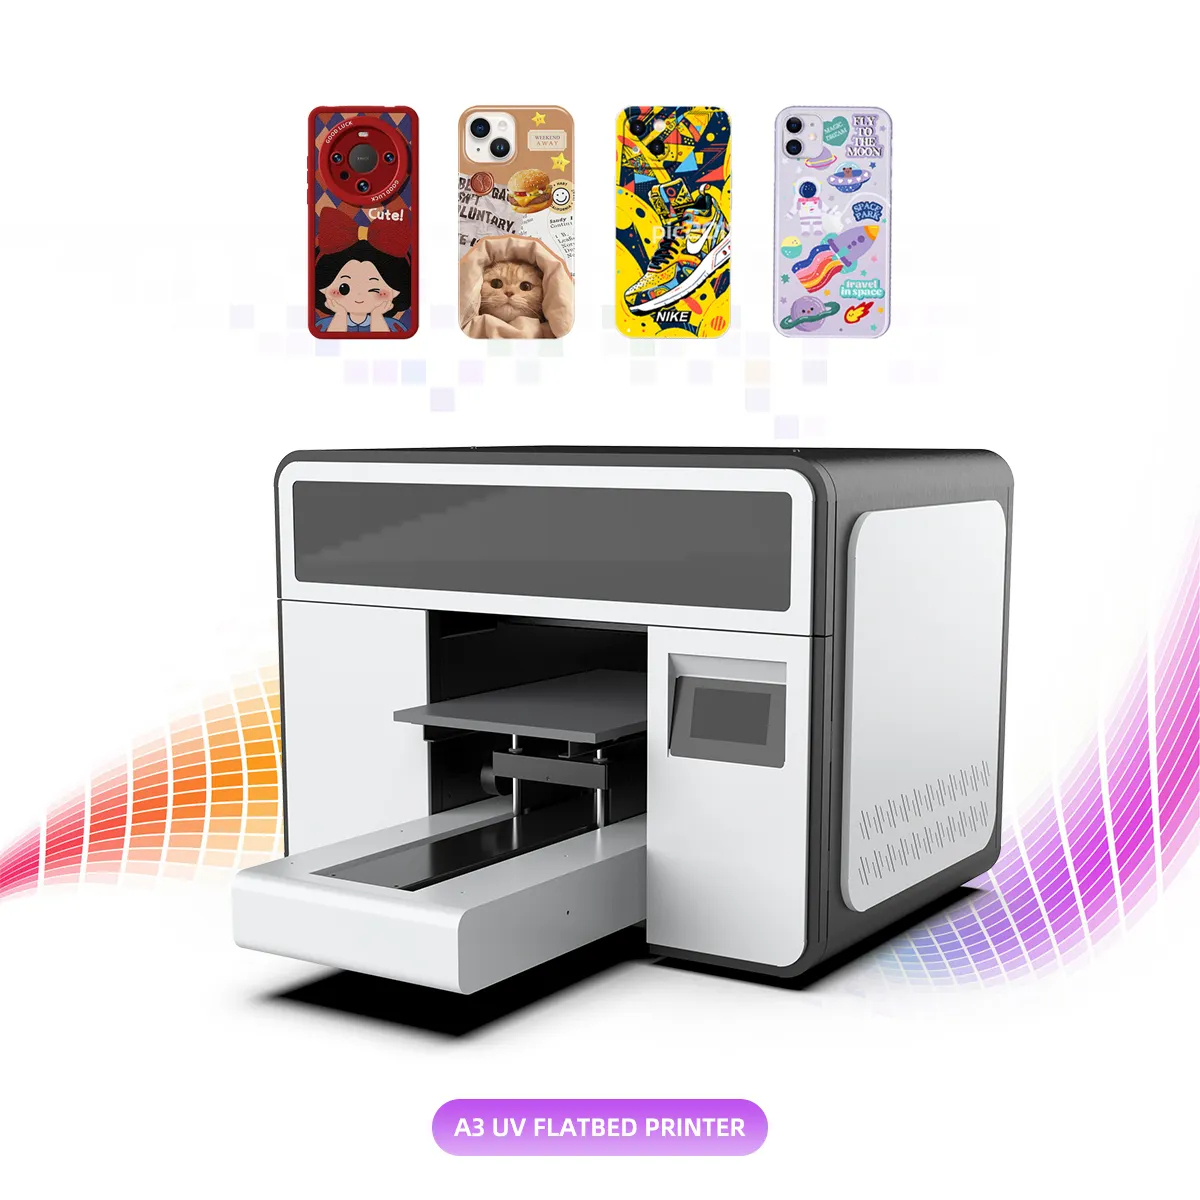 फ़ोन केस यूवी प्रिंटिंग मशीन स्वचालित मिनी प्लॉटर ए3 यूवी फ्लैटबेड प्रिंटर i3200 प्रिंटर इंकजेट यूवी प्रिंटर ए3